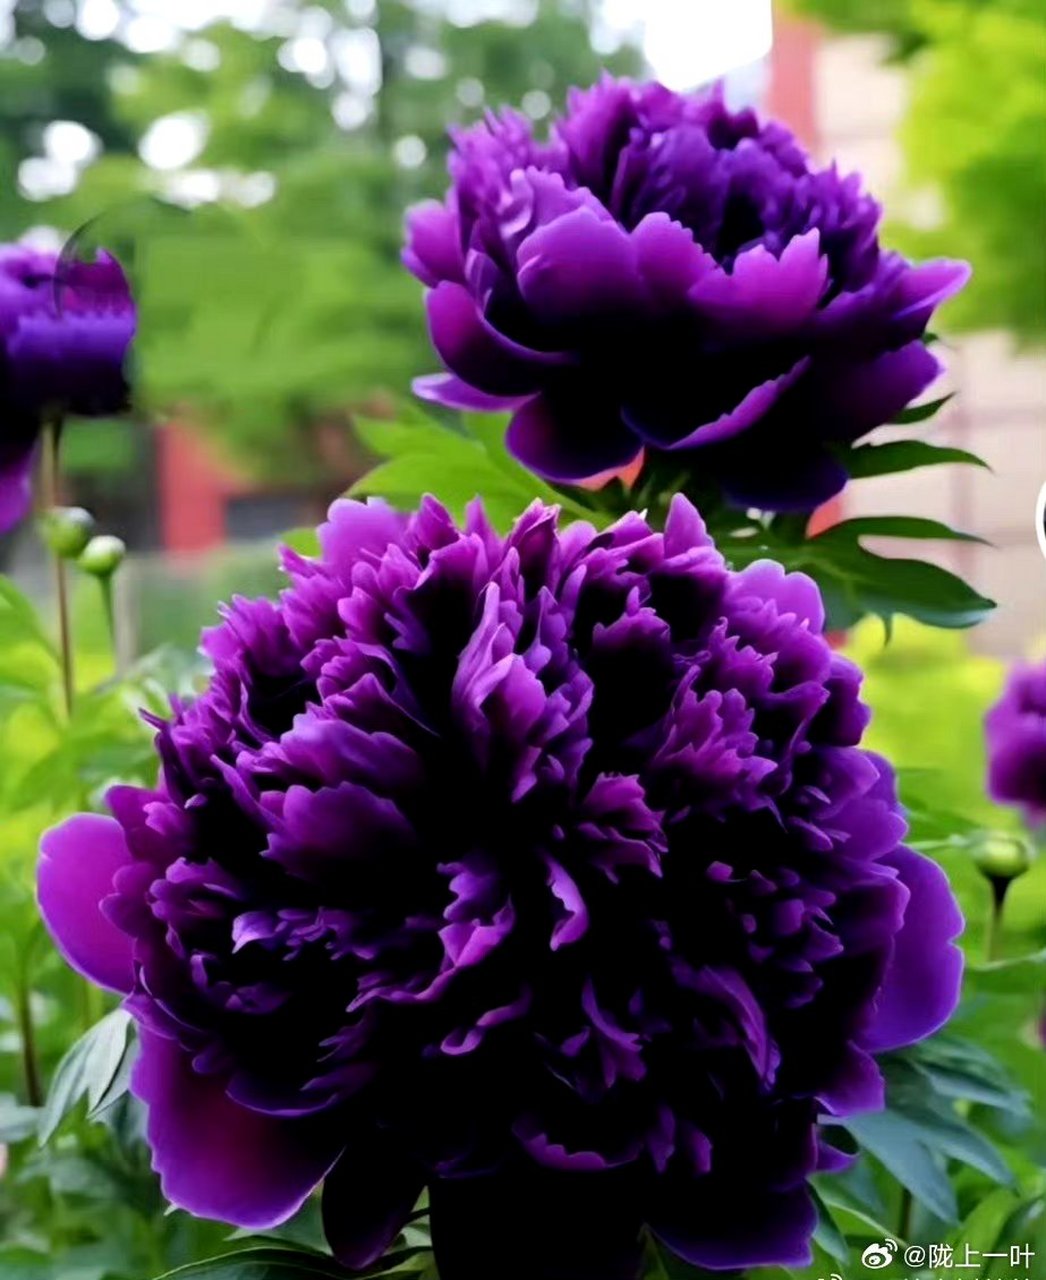 90紫色牡丹花,美得让人窒息!